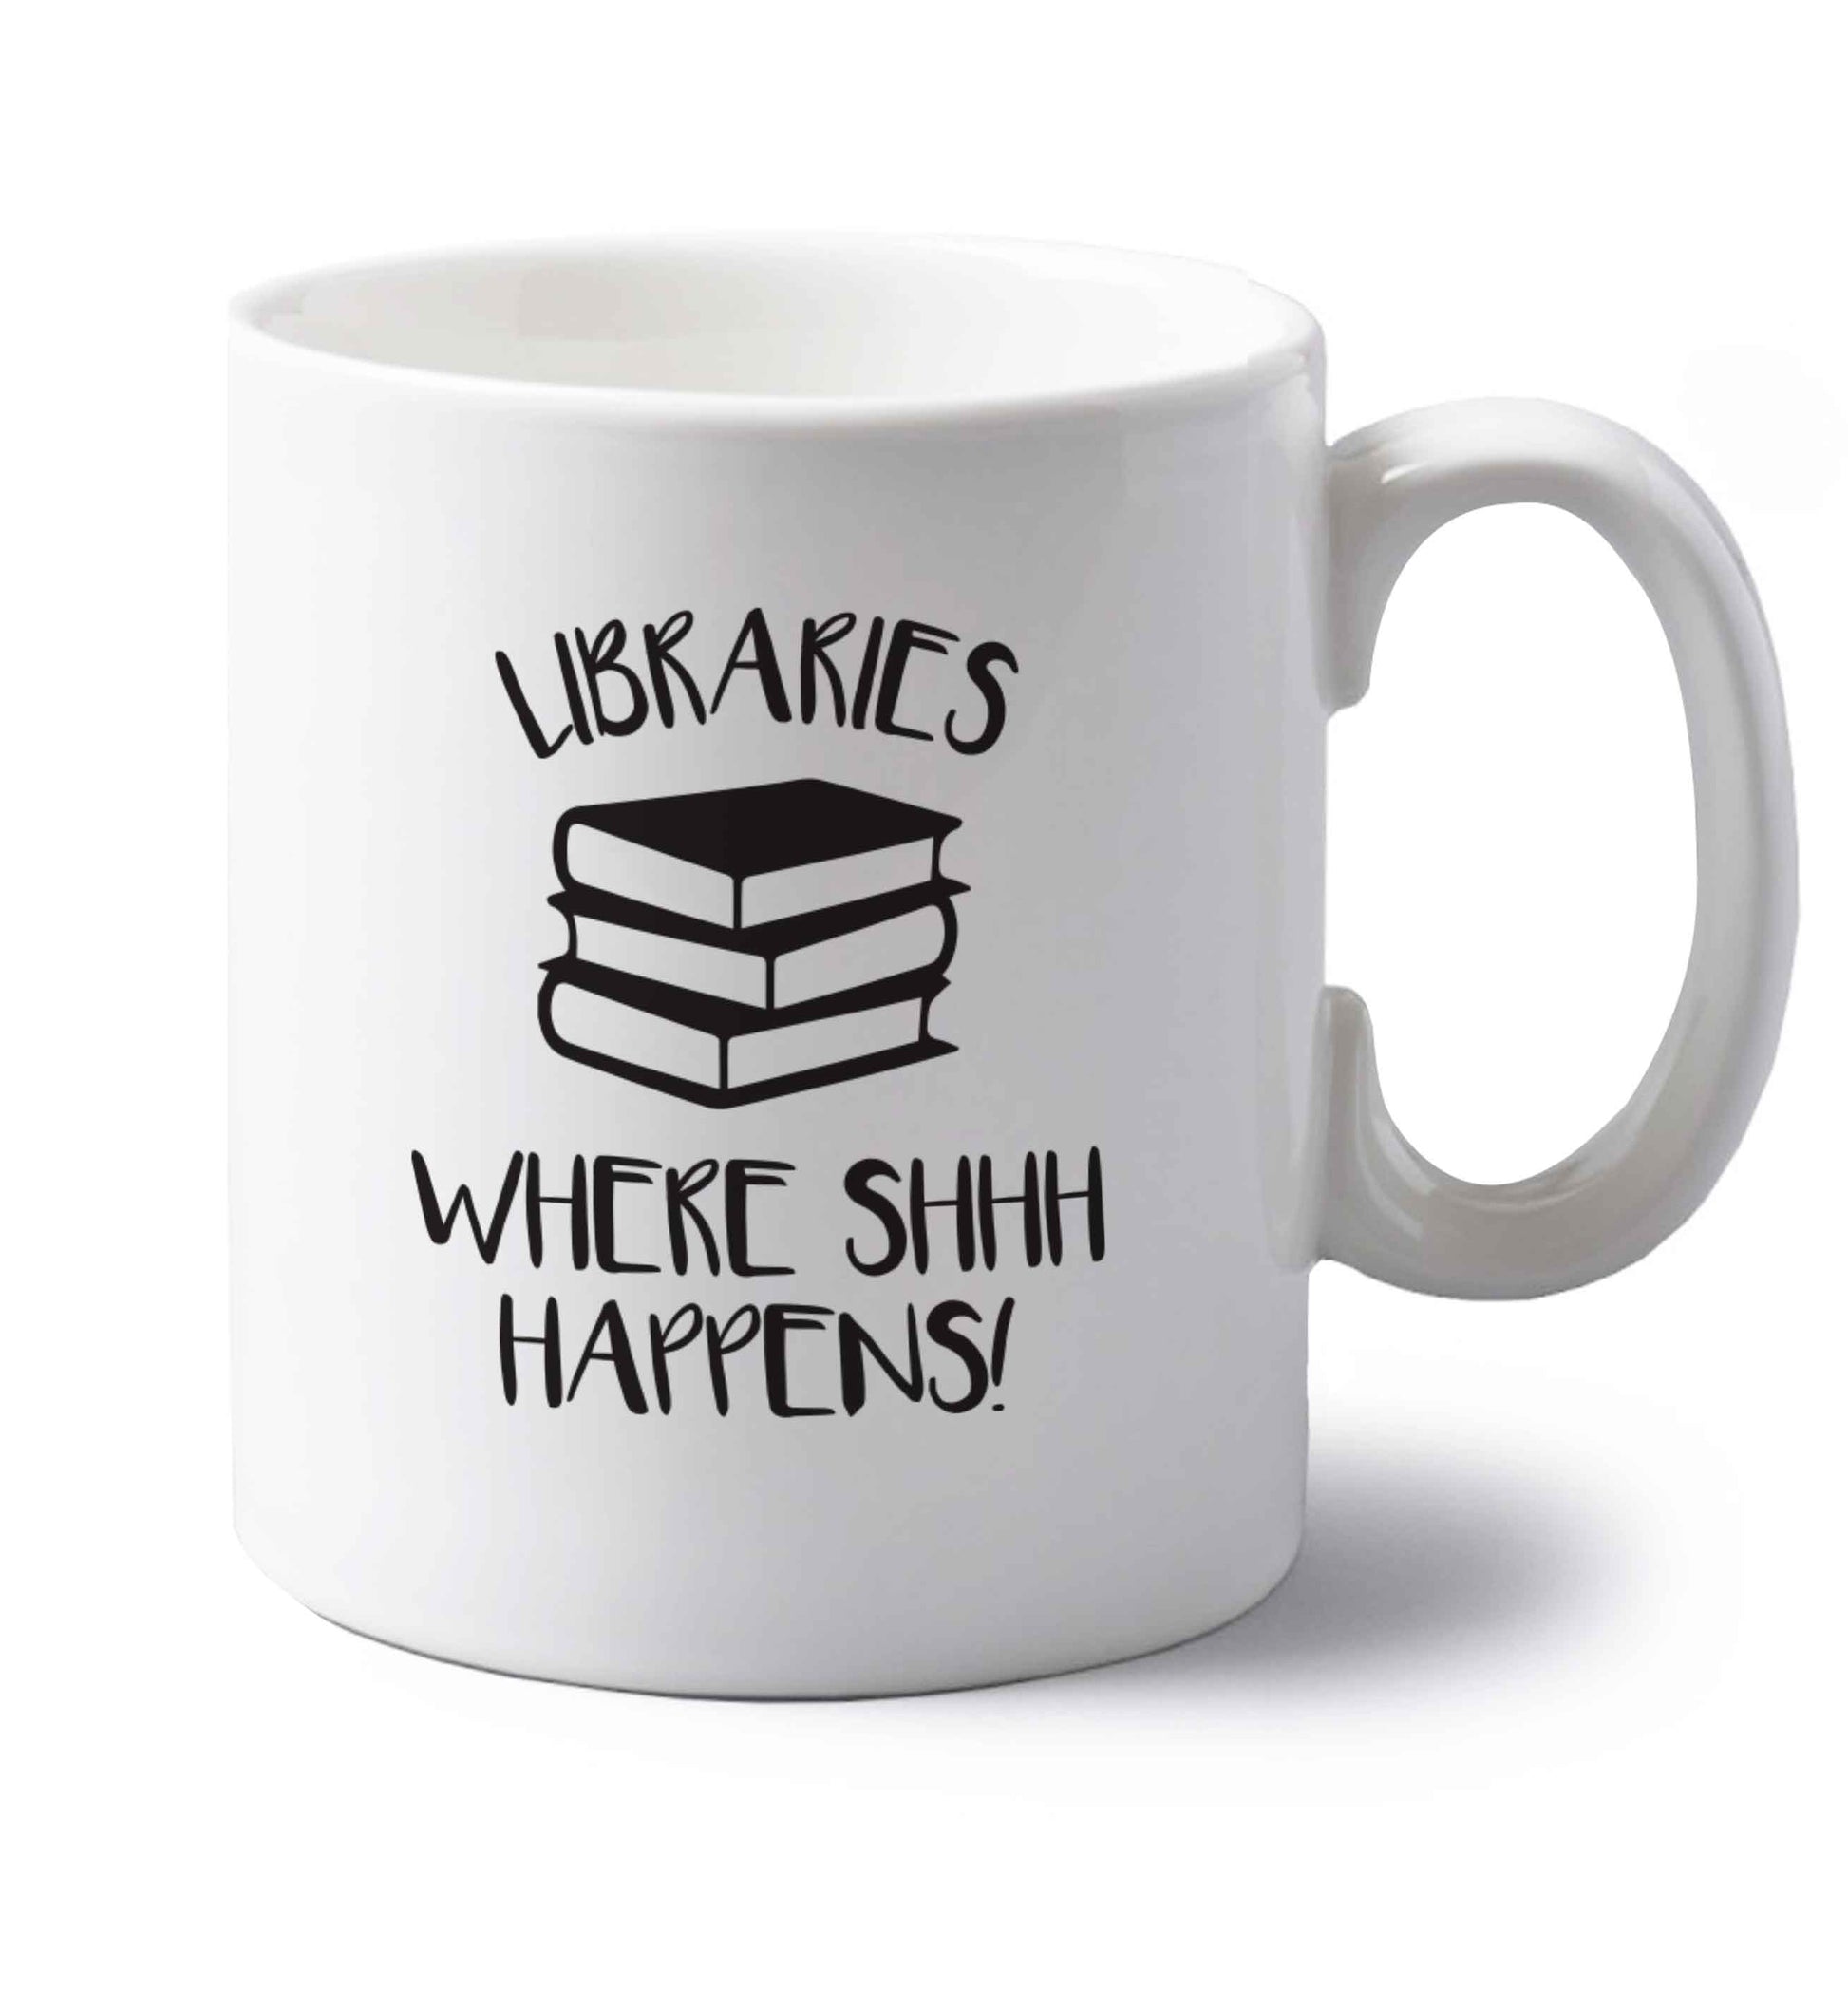 Libraries where shh happens! left handed white ceramic mug 